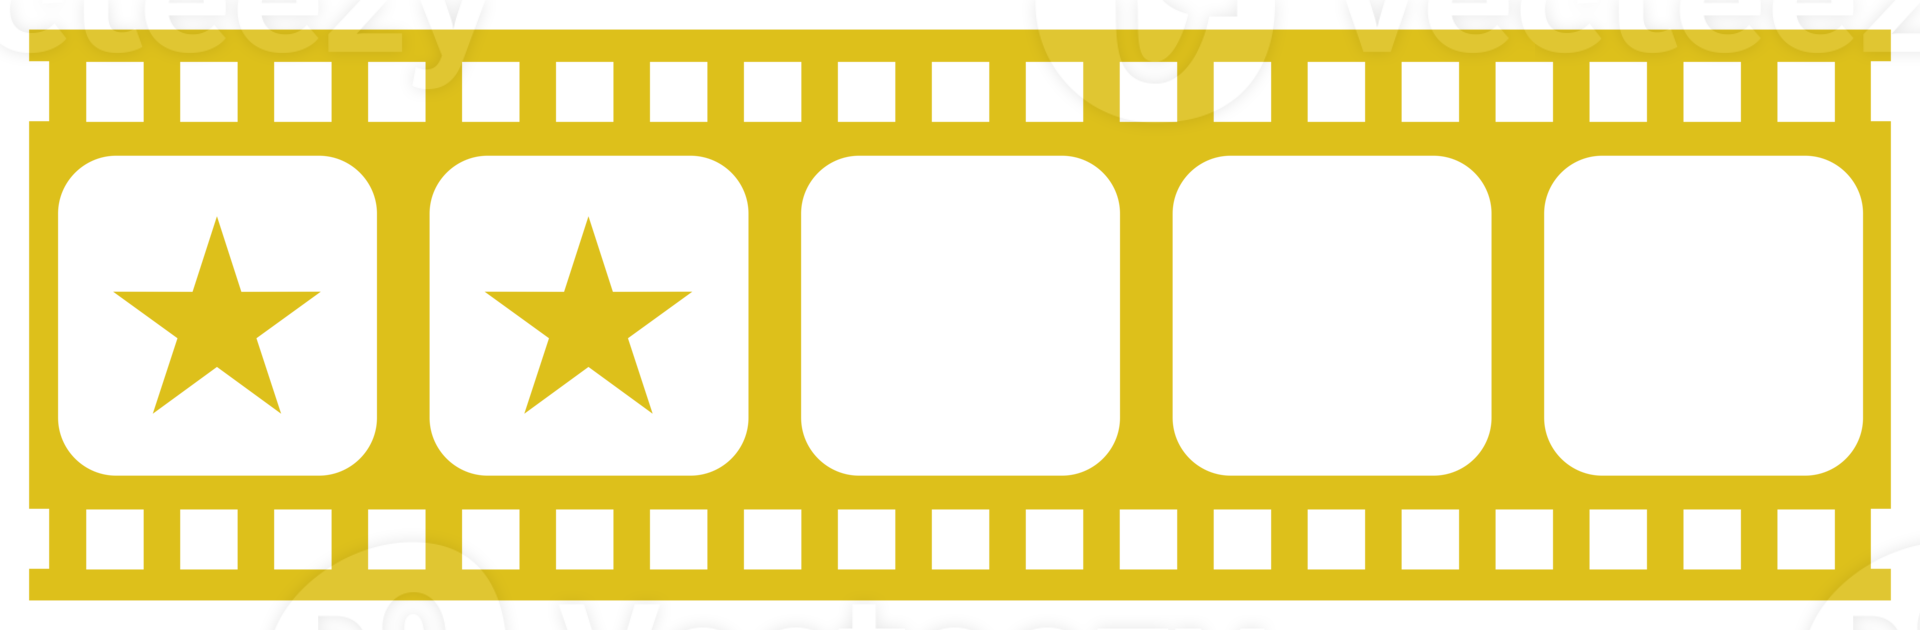 visuel du signe cinq étoiles 5 dans la silhouette de la bande de film. symbole d'icône de classement par étoiles pour la critique de film ou de film, le pictogramme, les applications, le site Web ou l'élément de conception graphique. classement 2 étoiles. formatpng png